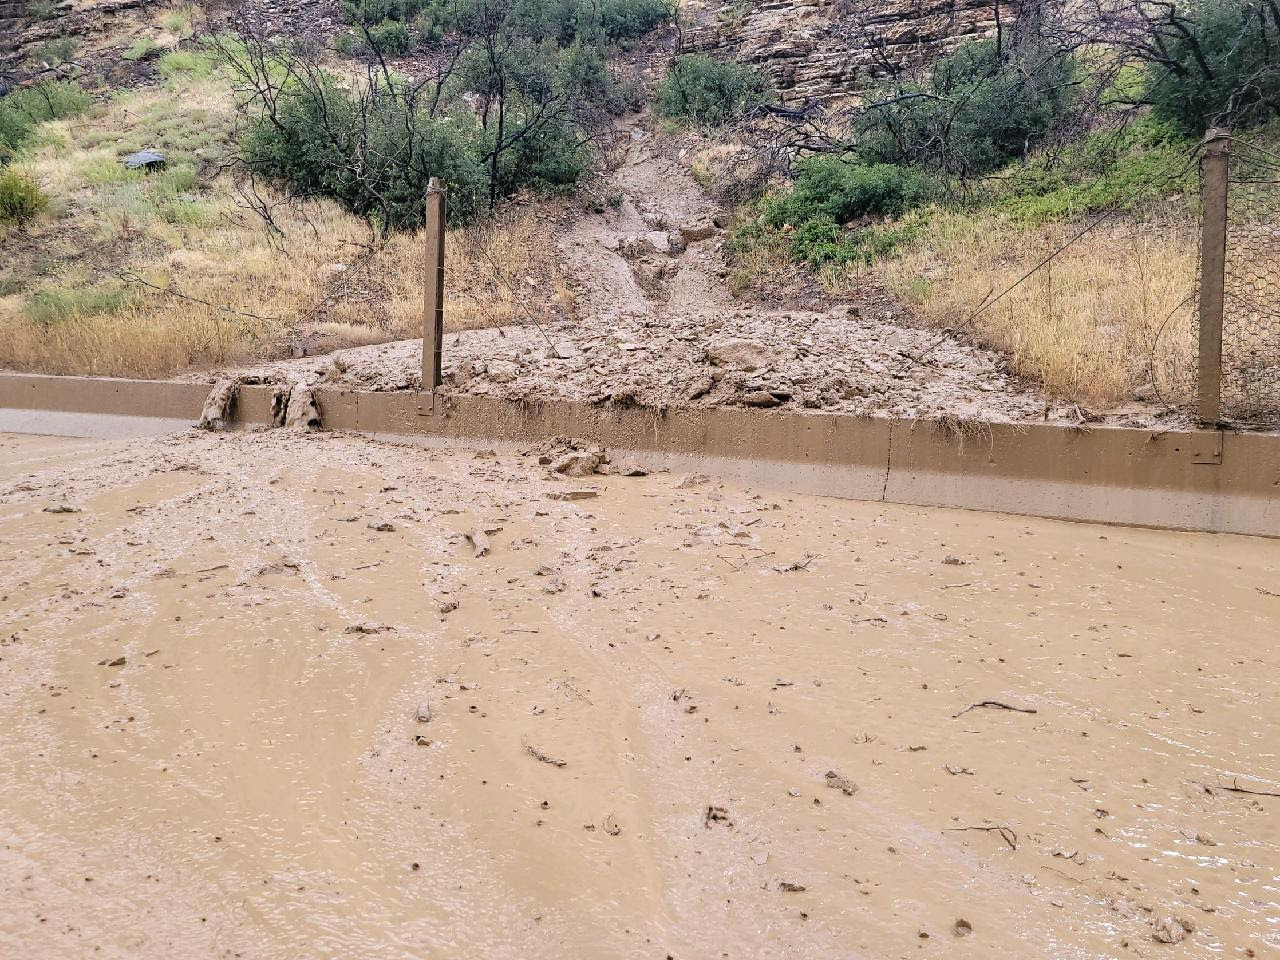 Glenwood Canyon Mudslide 2.jpg detail image